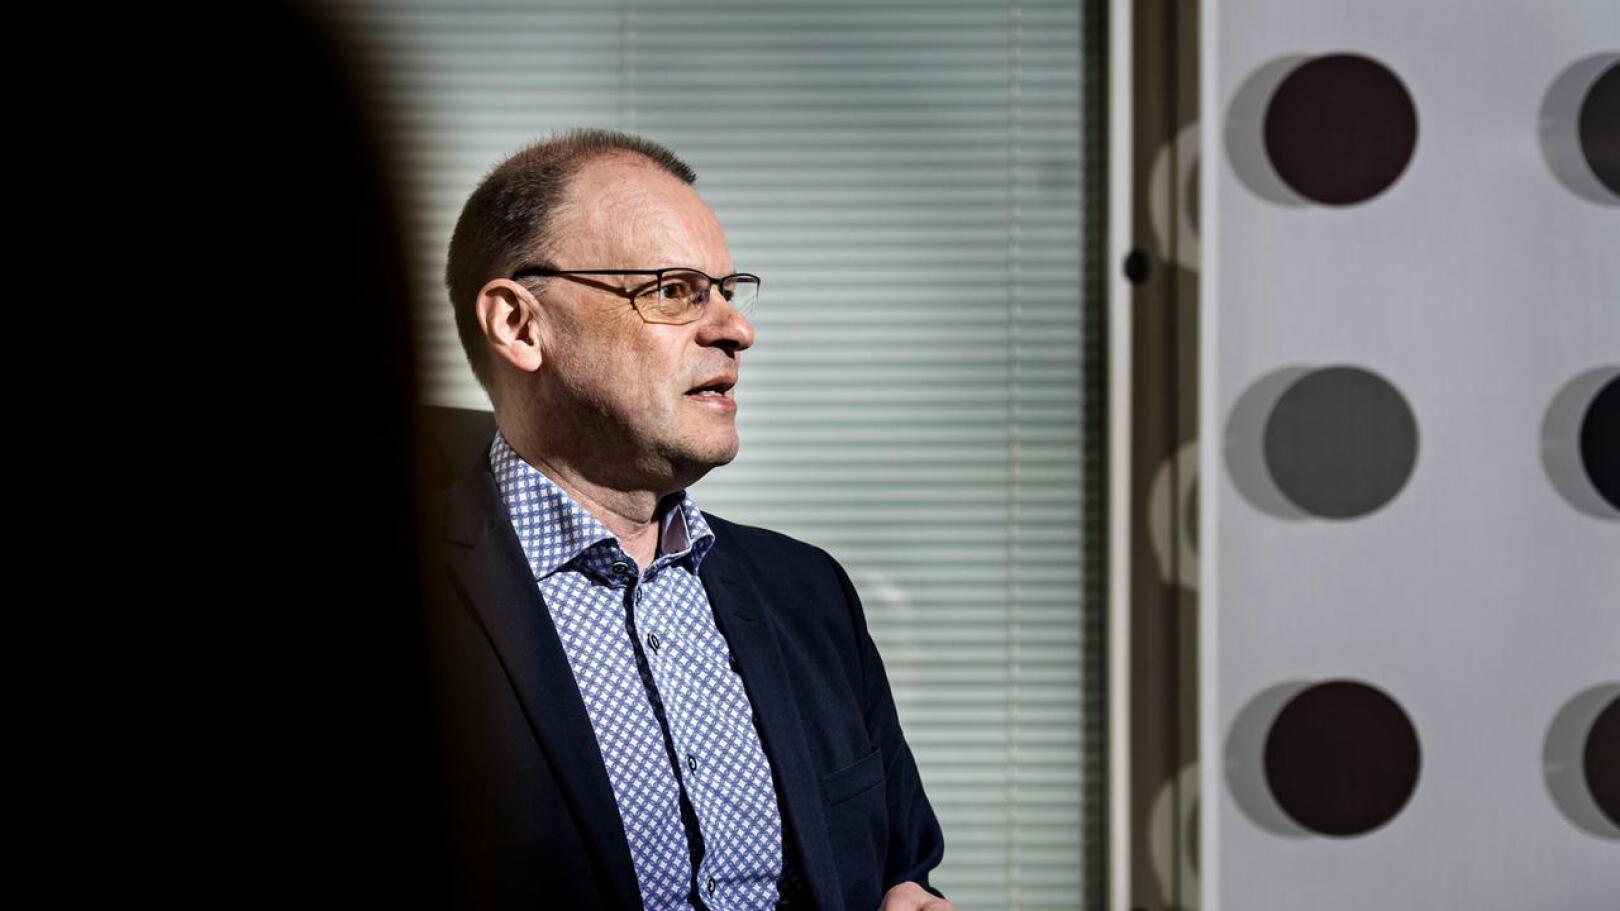 KPK Yhtiöiden toimitusjohtaja Mikko Luoman mukaan työnantajan näkökulmasta yhteistyö Soiten kanssa on toiminut erinomaisesti.